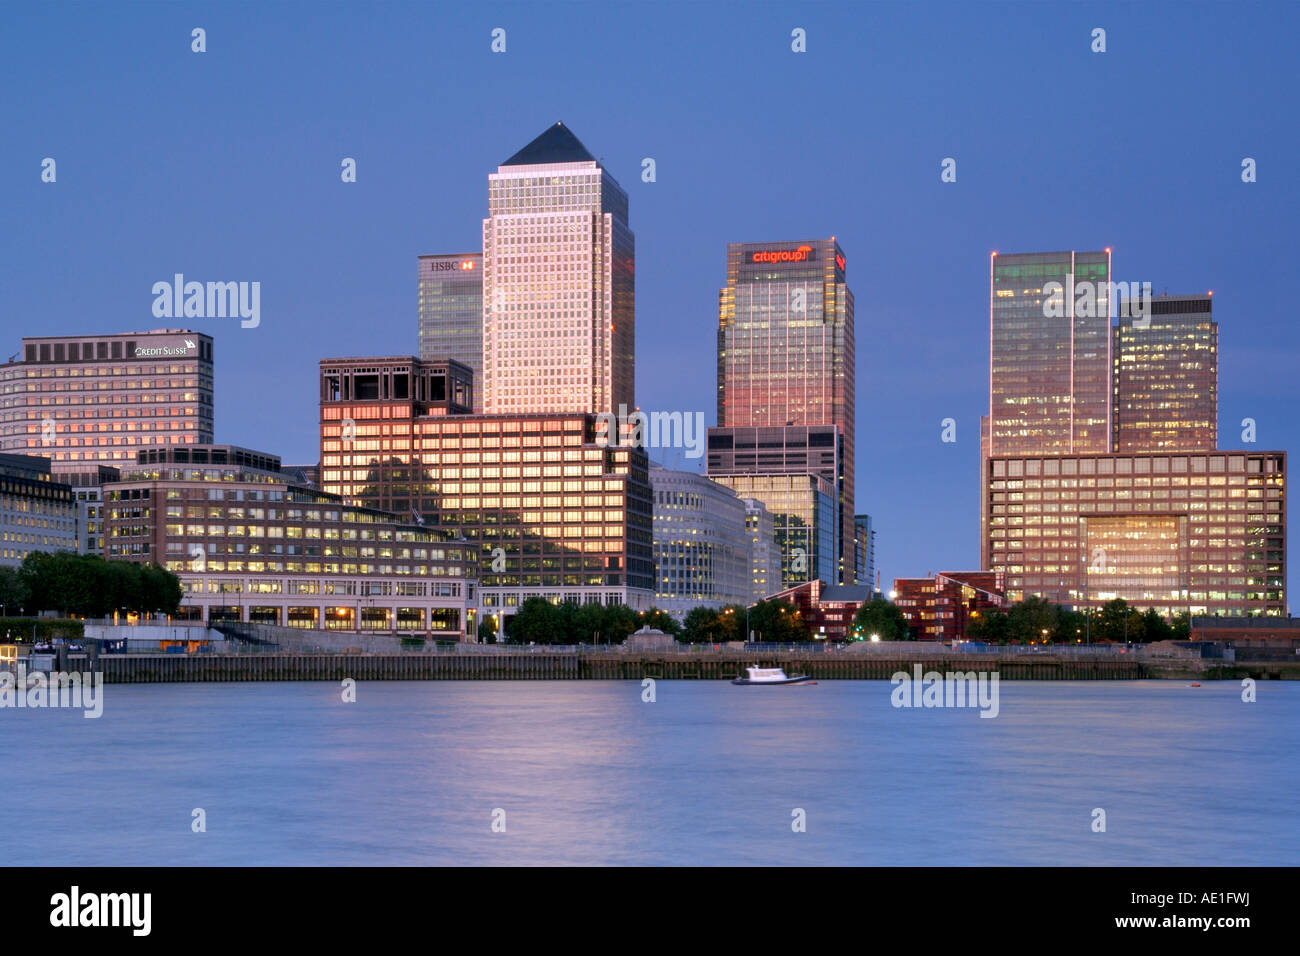 Crépuscule sur la rivière Thames de Canary Wharf Tower et d'autres bâtiments dans le Docklands sur l'Isle of Dogs à Londres. Banque D'Images